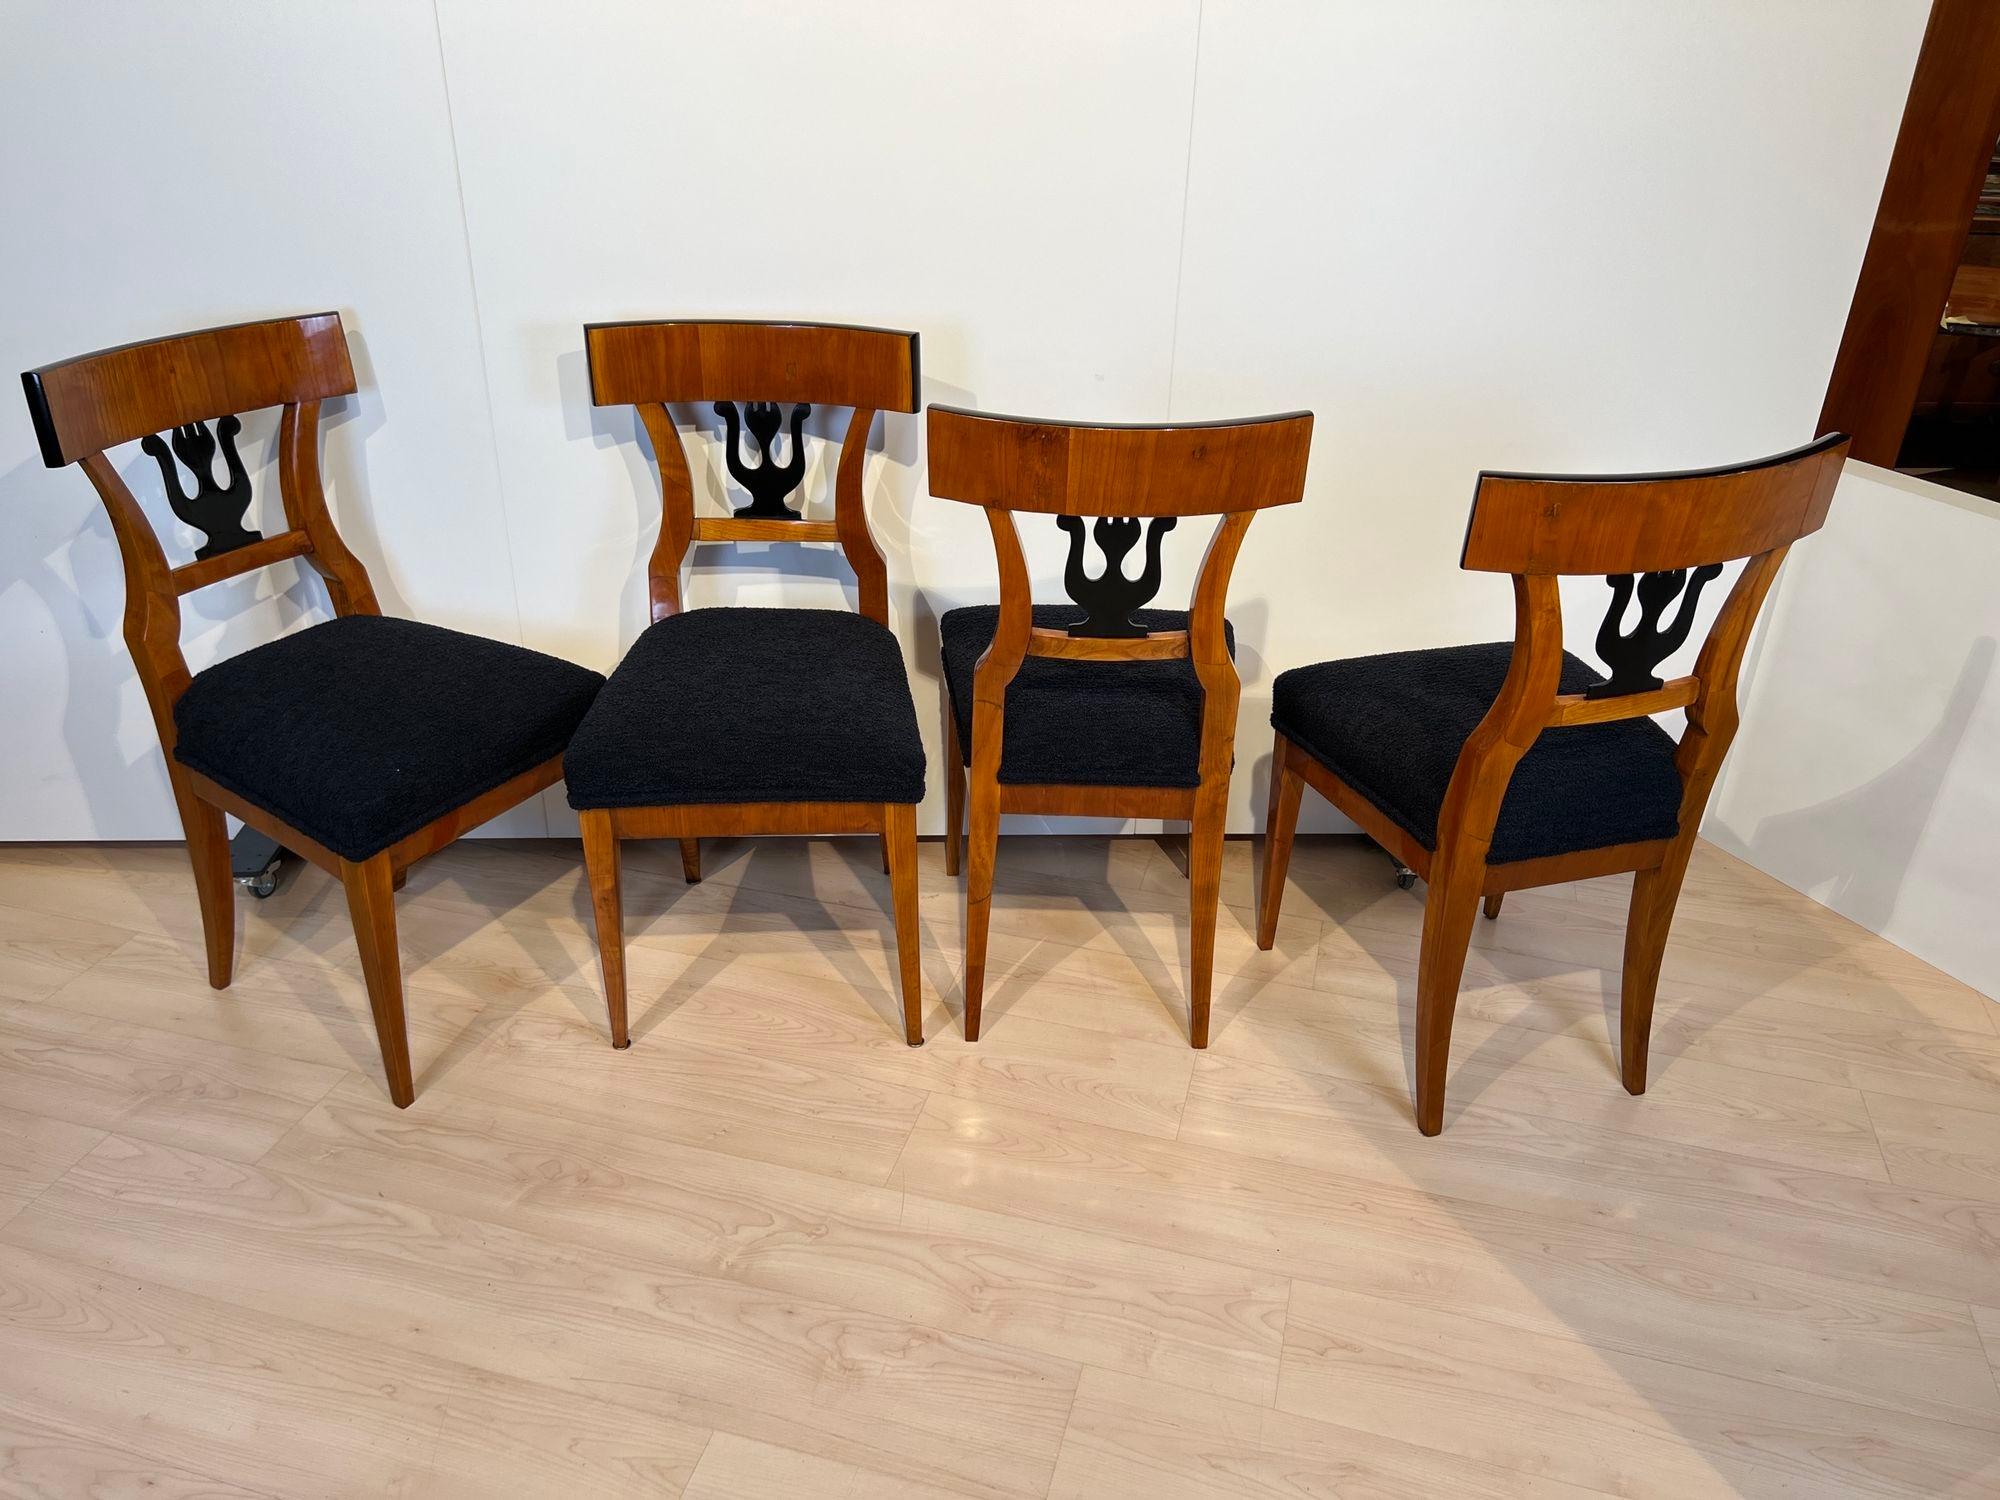 Sehr eleganter Satz von 4 Biedermeier Stühlen aus Süddeutschland um 1830.
Kirschholz furniert und massiv. Ebonisierte Rückendekoration in Form einer Leier, ein sehr klassizistisches Motiv.
Neu gepolstert und mit schwarzem, flauschigem Stoff bezogen.